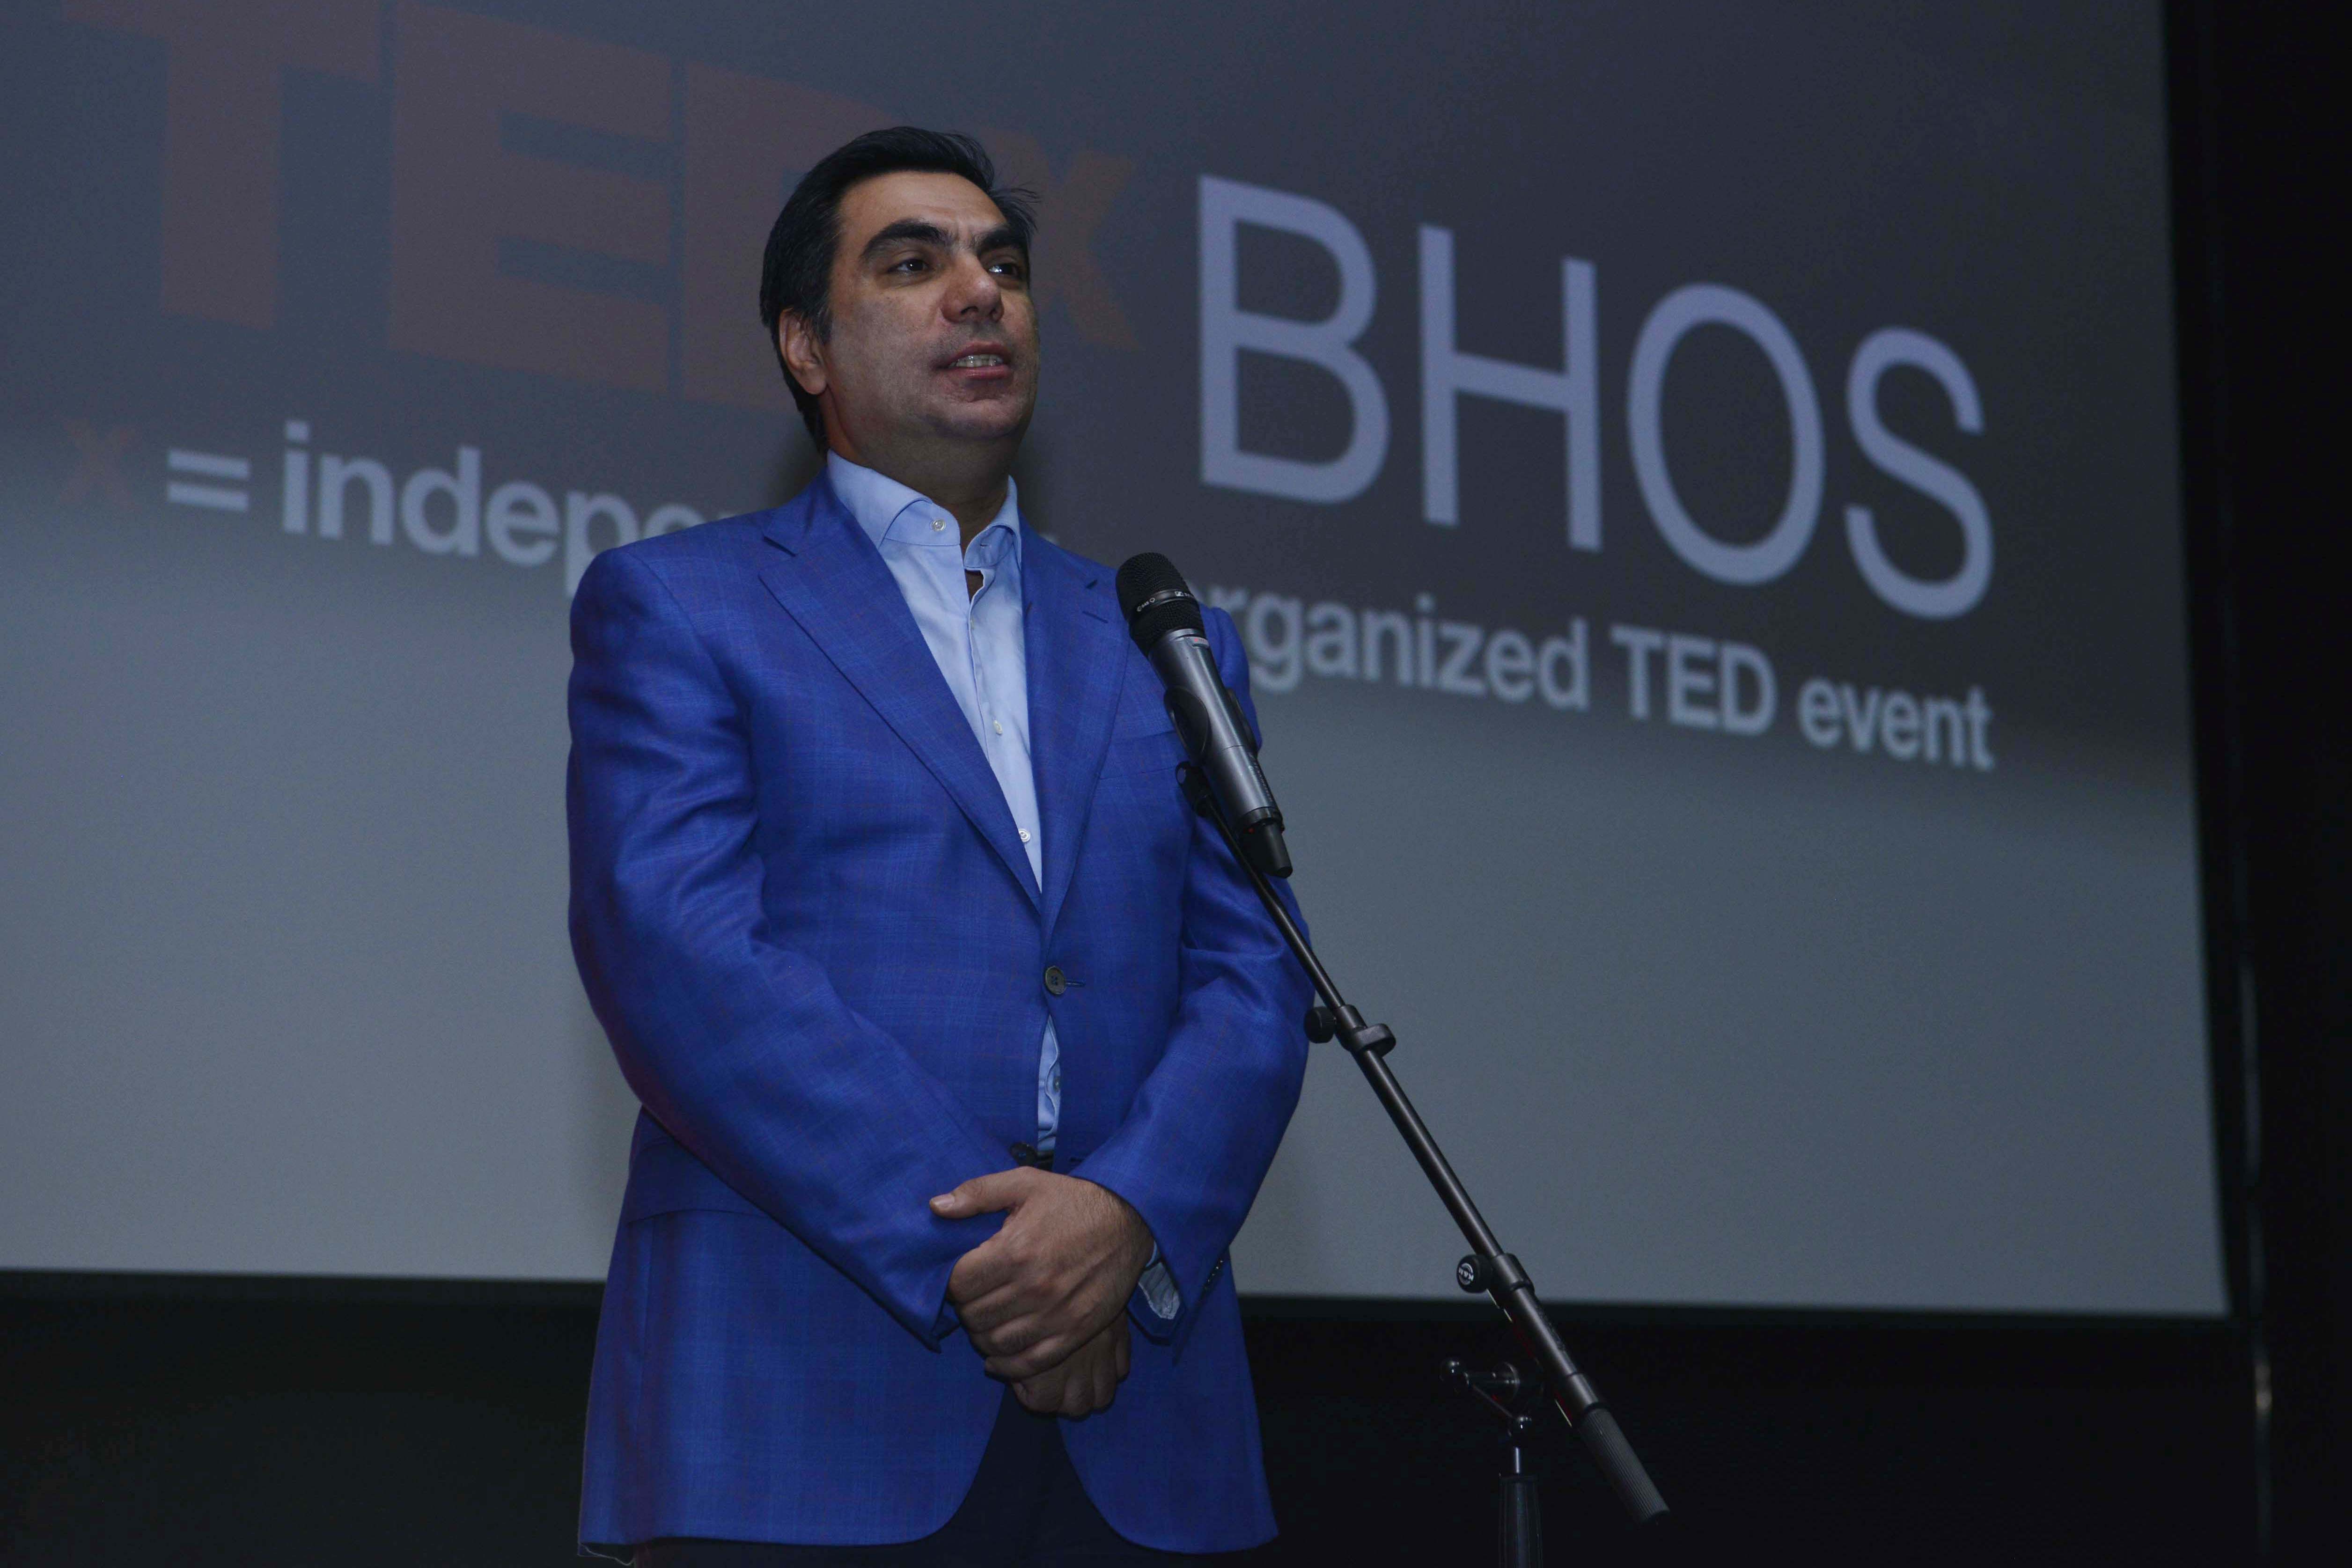 В БВШН состоялась первая конференция TEDxBHOS